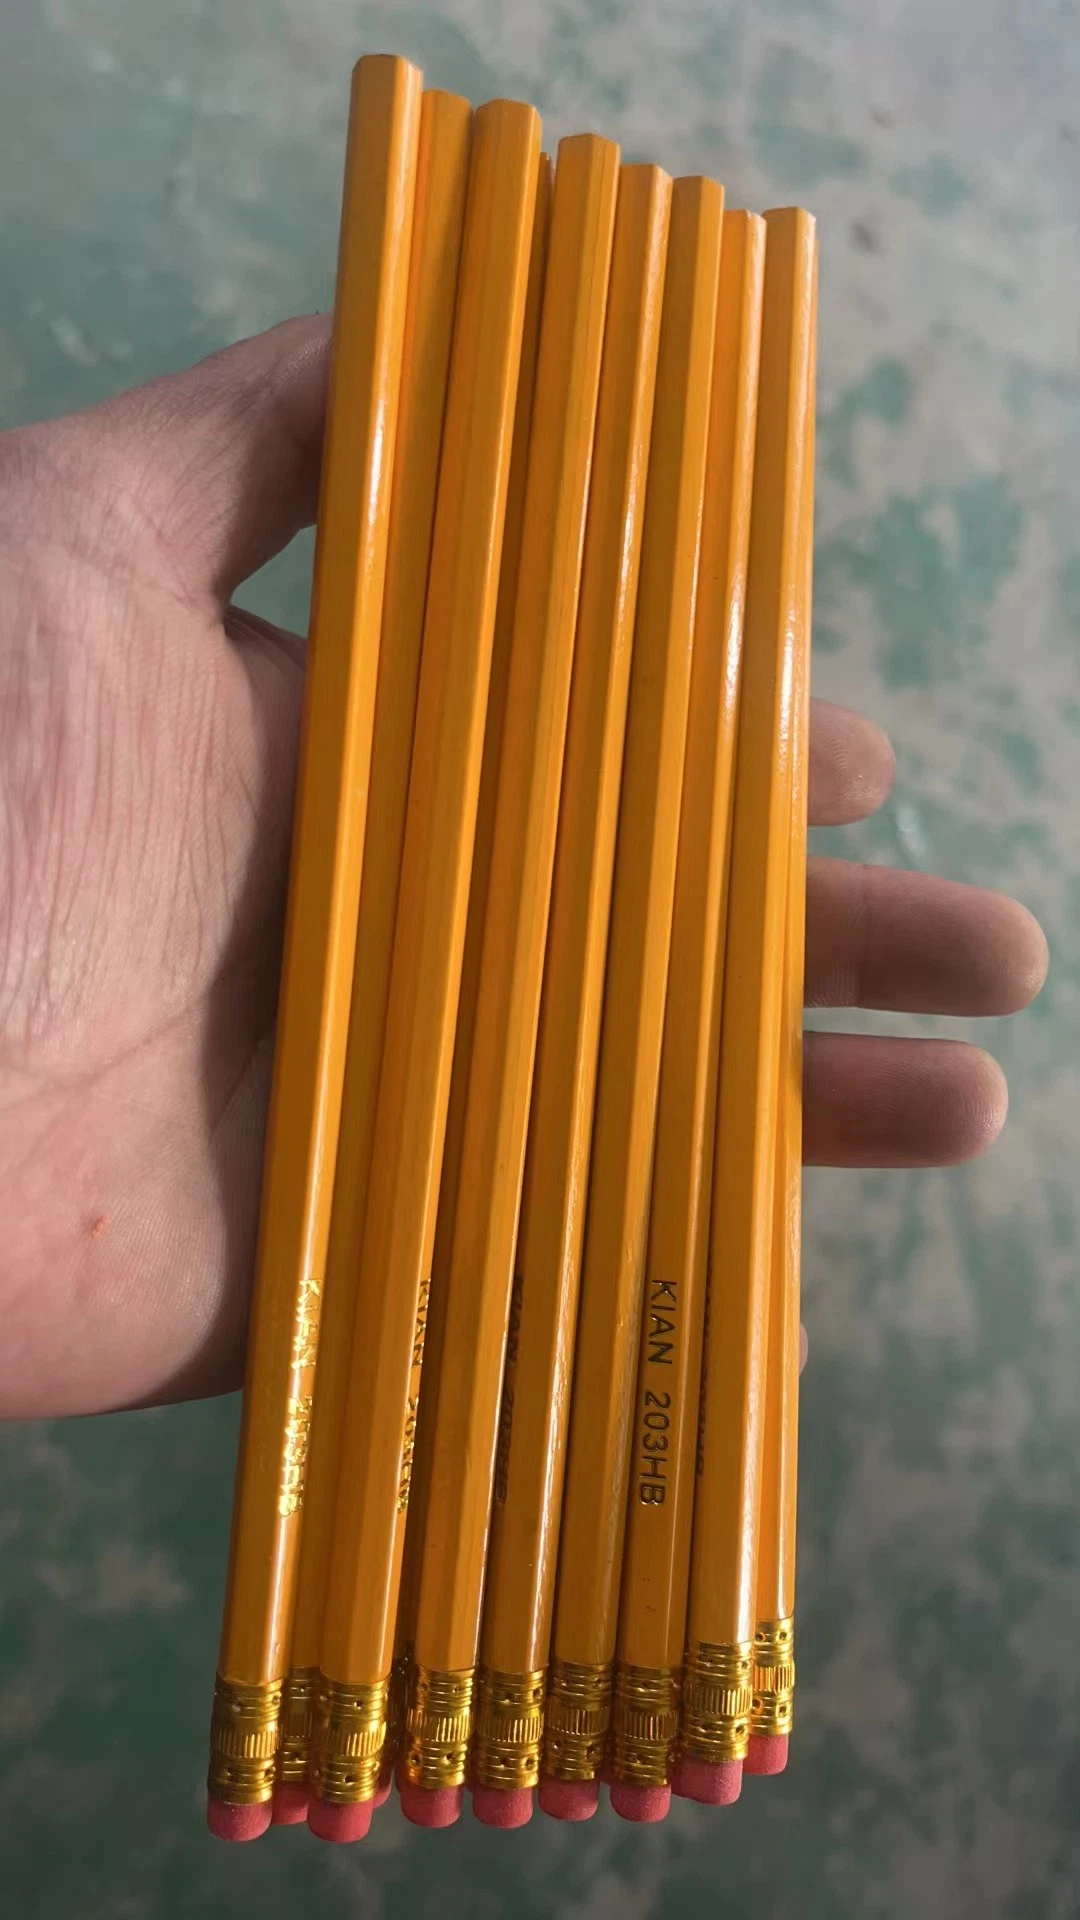 Lápis de madeira Hb Yellow mais baratos com borracha